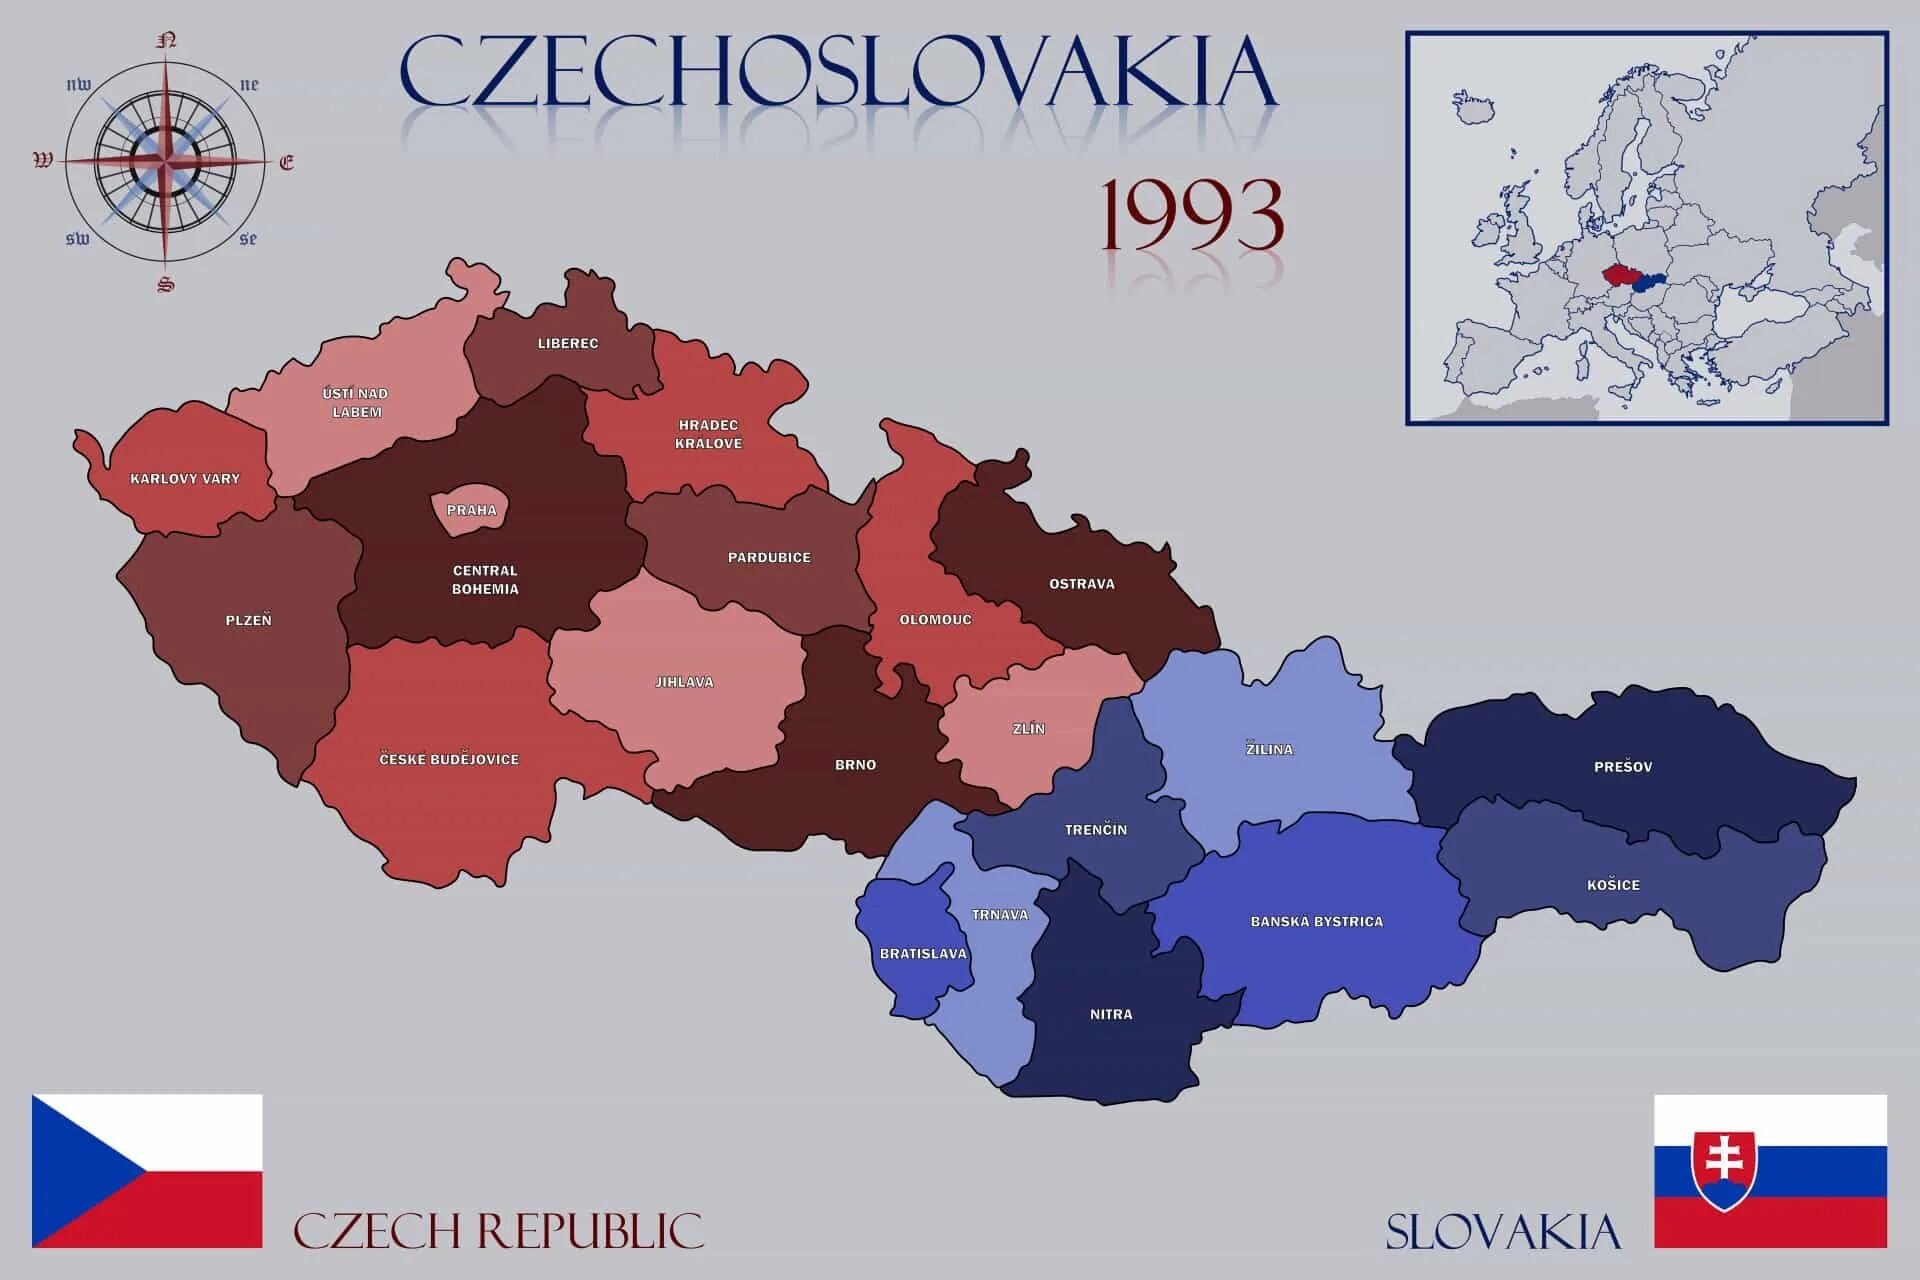 Как называется чехословакия. В 1993 году Чехословакия разделилась на Чехию и Словакию. Распад Чехословакии карта. Разделение Чехословакии на Чехию и Словакию. 1993 Г. распад Чехословакии на Чехию и Словакию.